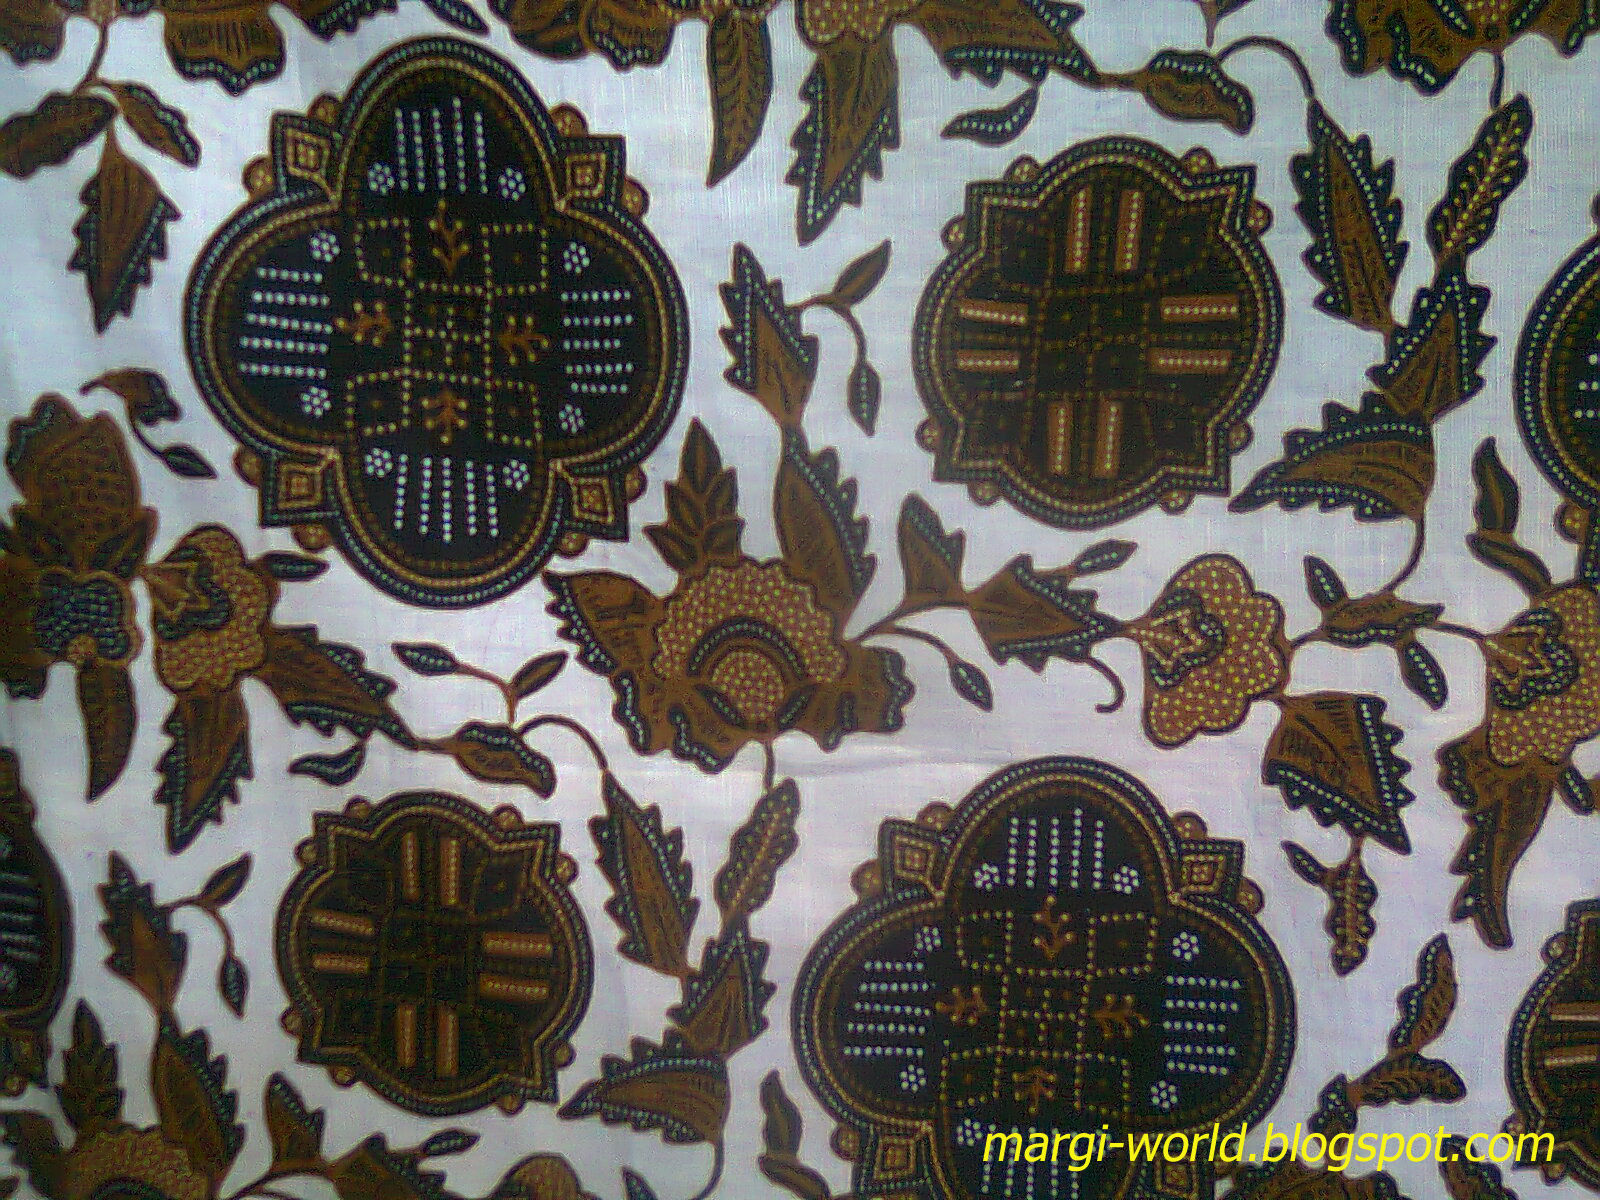 Contoh gambar batik tradisional sebagai inspirasi wallpaper